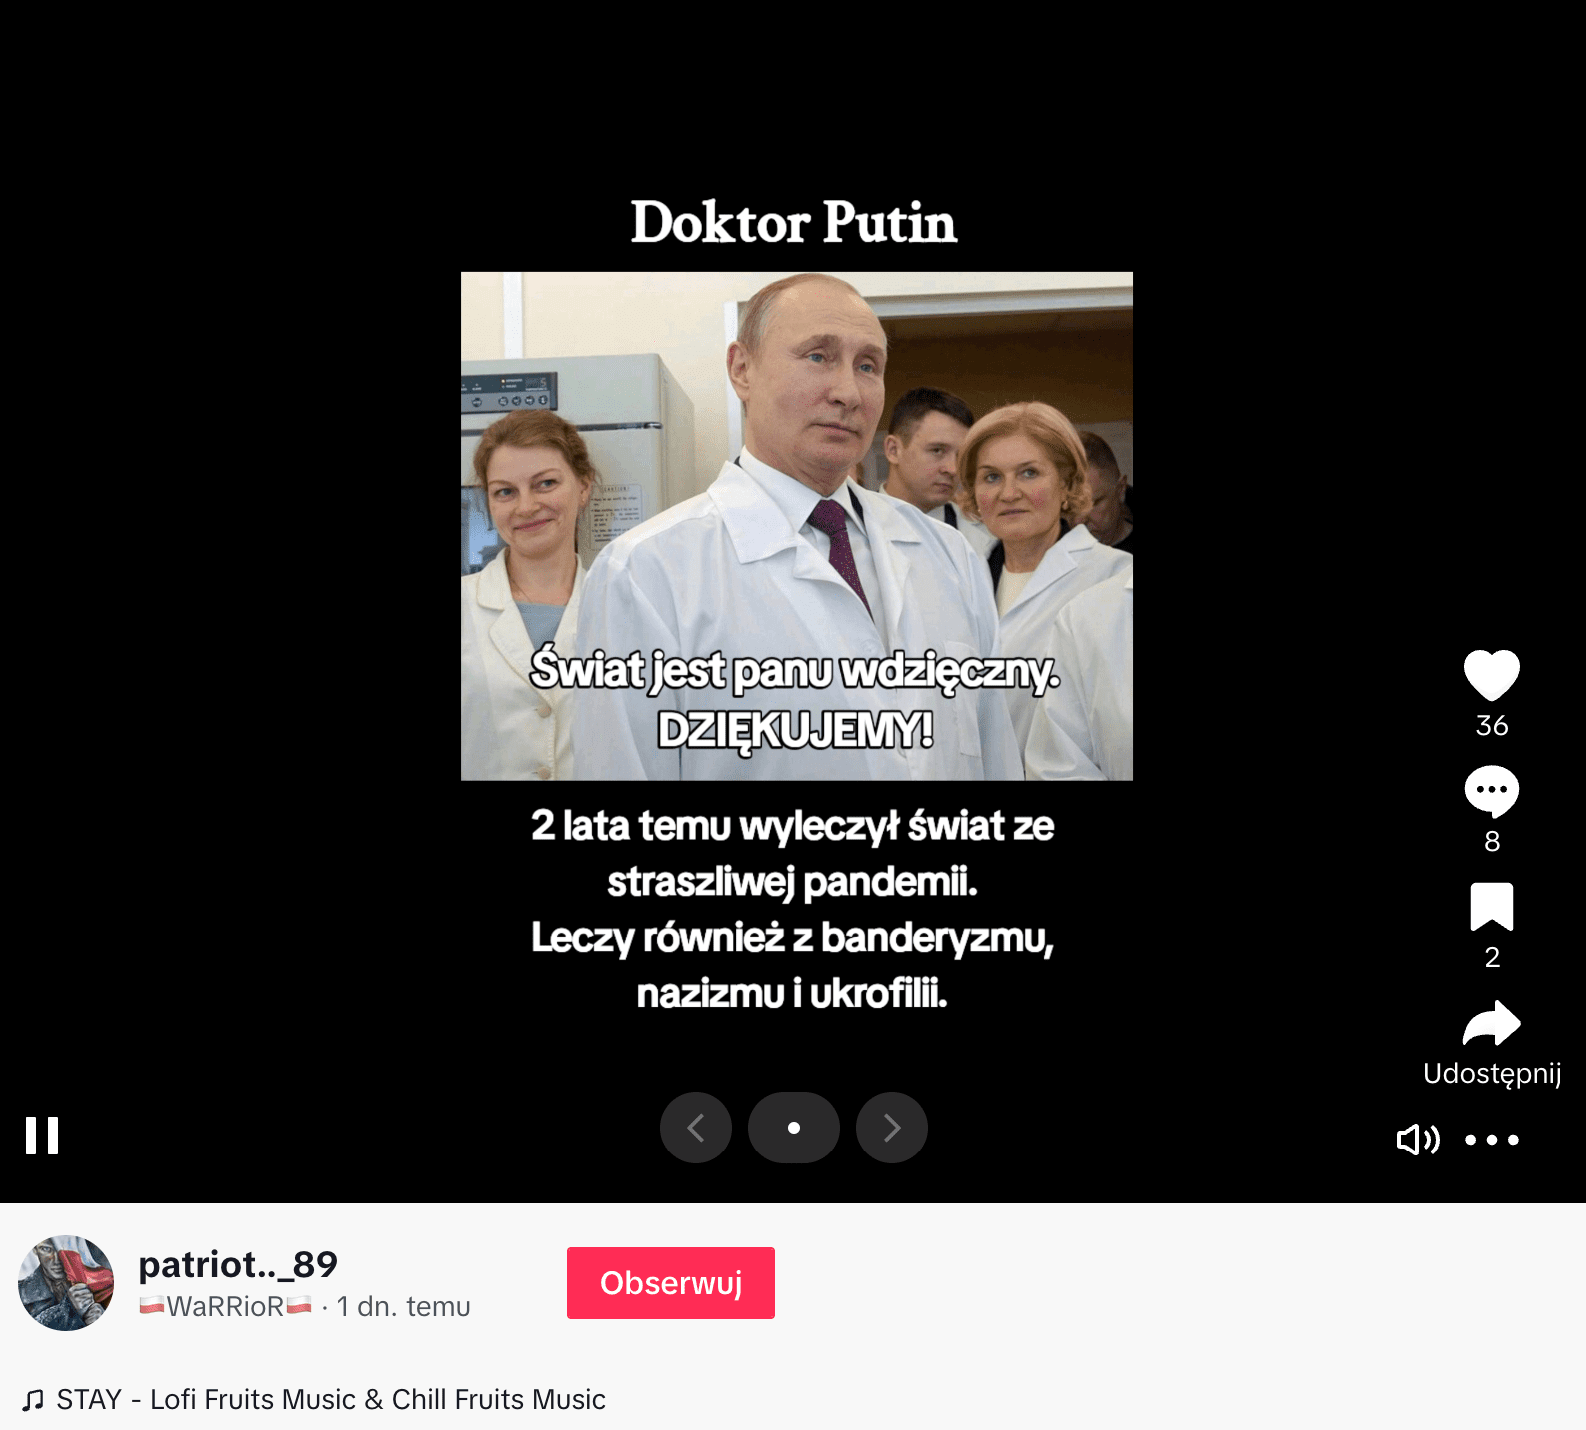 Zrzut ekranu jednego z omawianych nagrań. Widoczny jest Władimir Putin w białym fartuchu i pod krawatem. Film zdobył 36 polubień, 8 komentarzy, 2 osoby zapisały go.